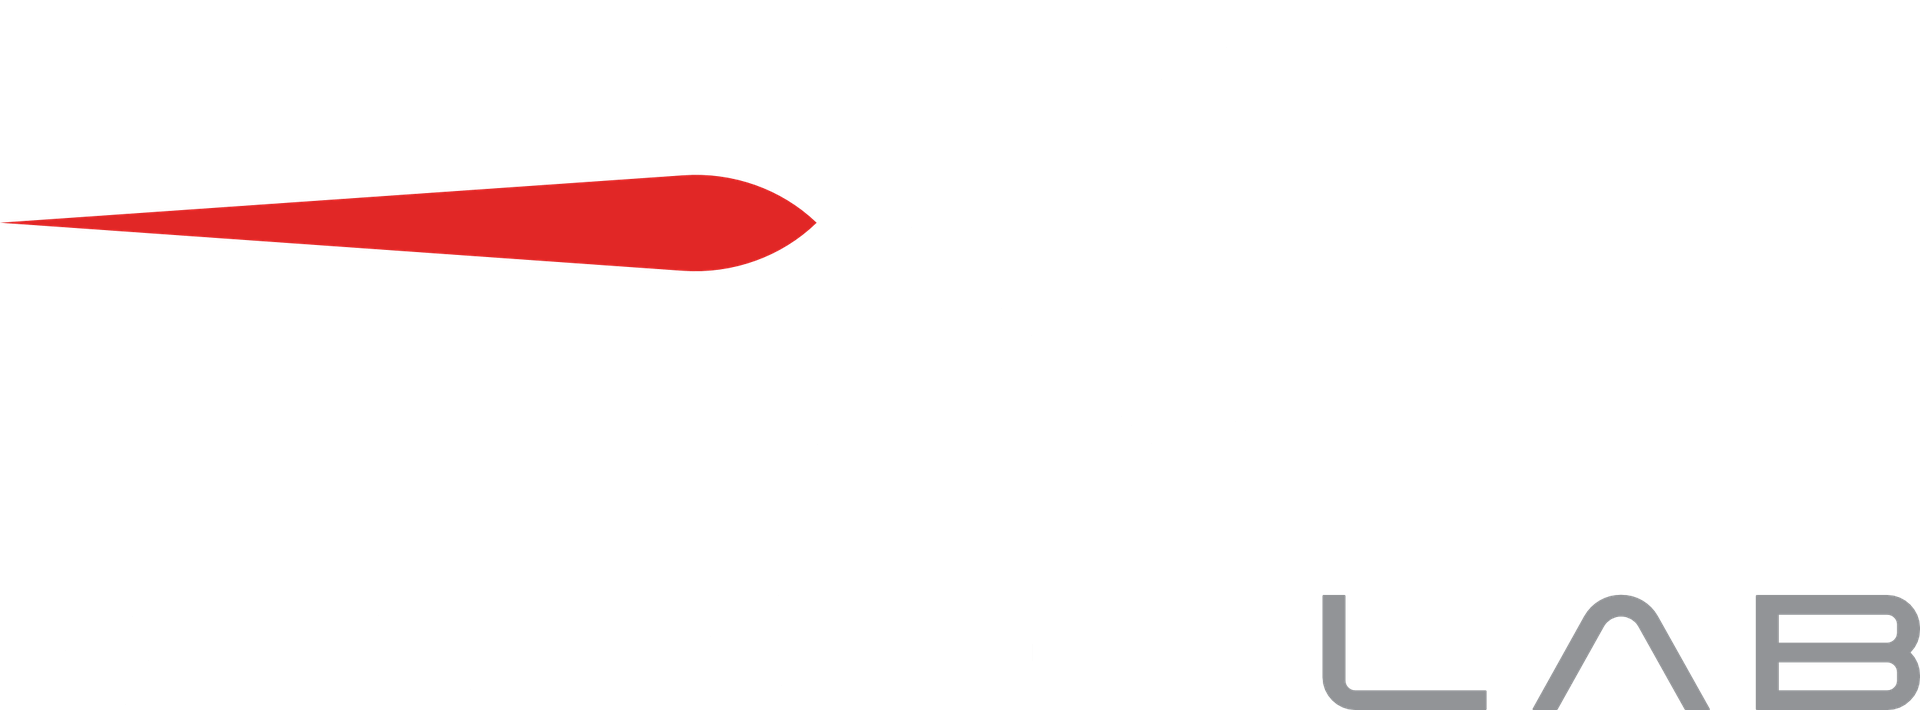 Rocket Lab's logo